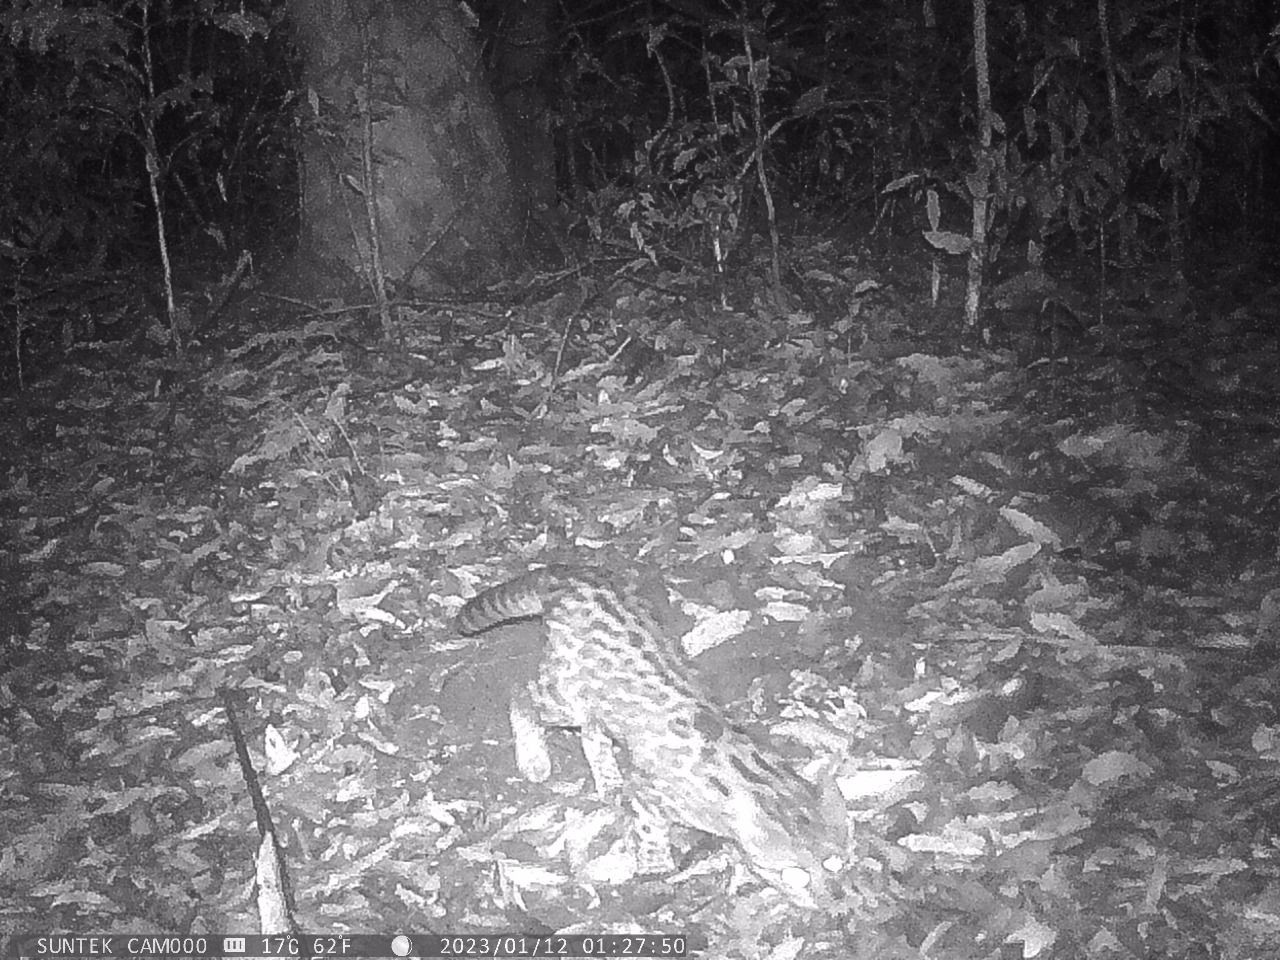 Felino em risco de extinção é visto em Cachoeirinha, diz coletivo que atua na defesa da floresta